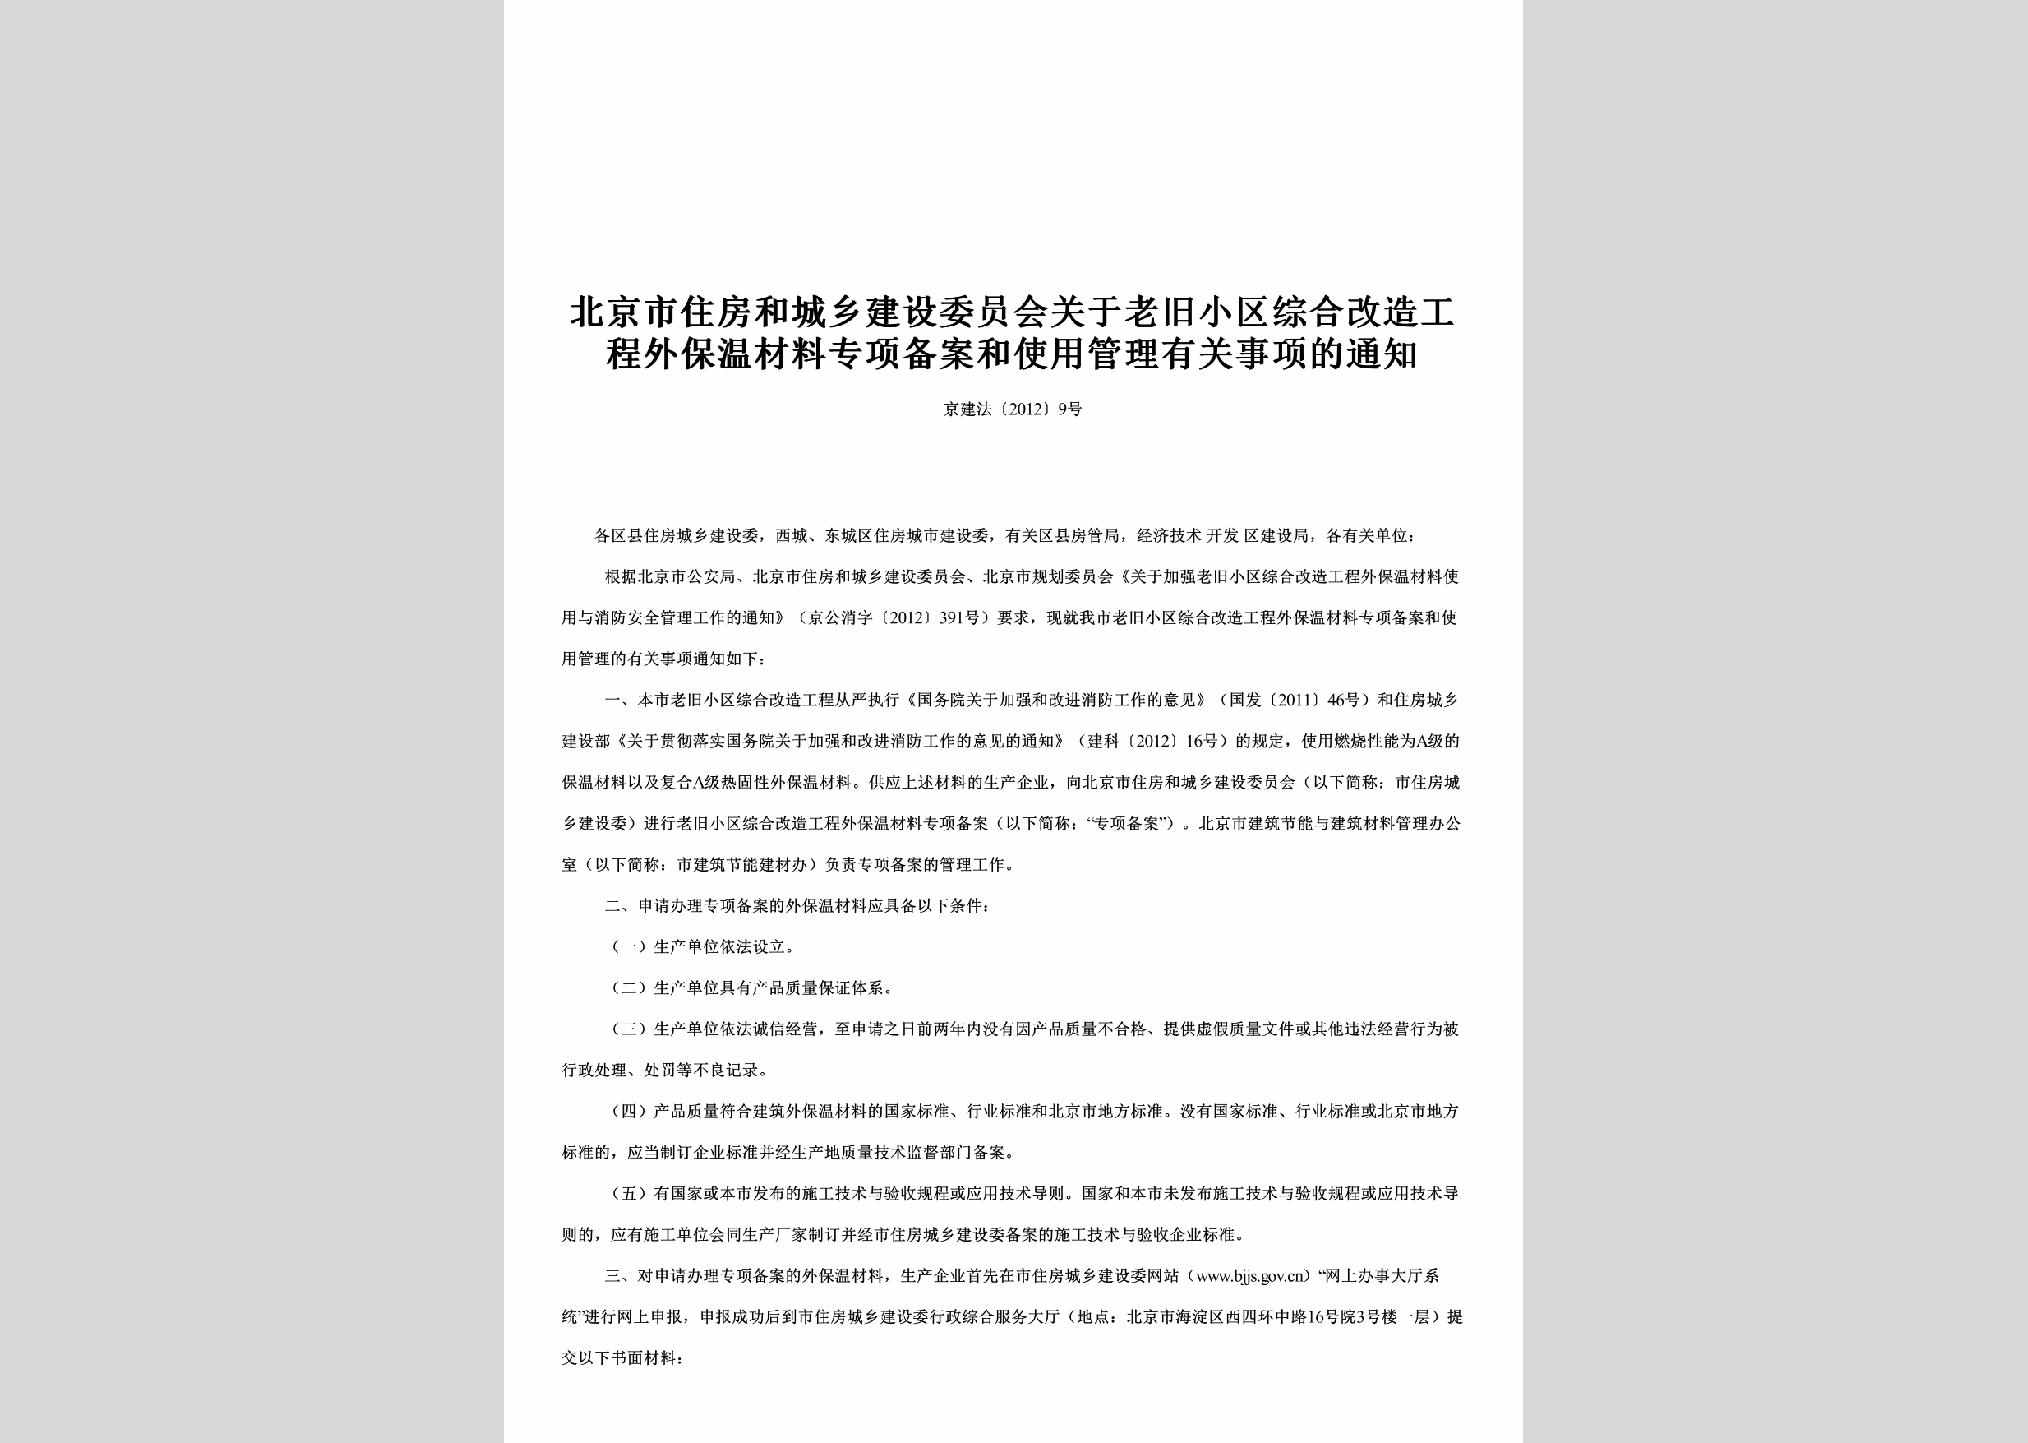 京建法[2012]9号：关于老旧小区综合改造工程外保温材料专项备案和使用管理有关事项的通知